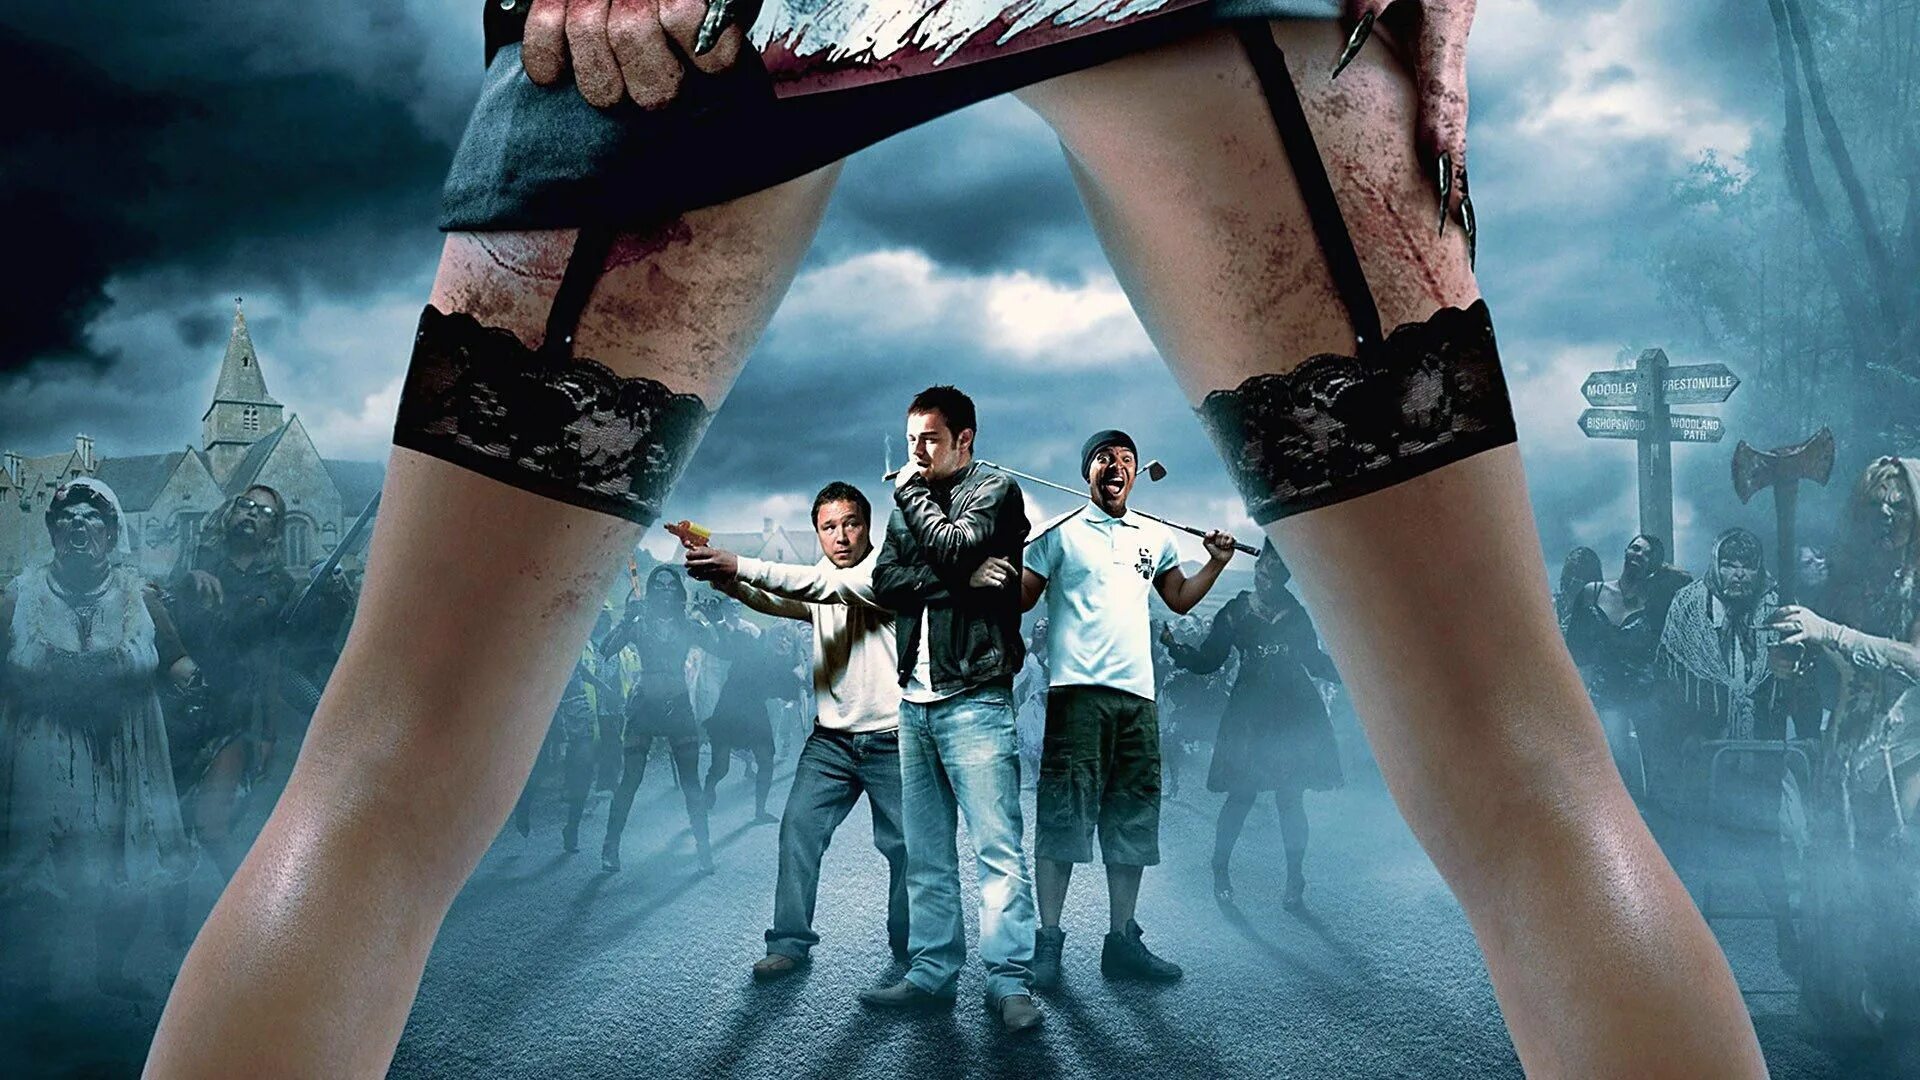 Попали! (Конура) -2009 Постер. Фантастика ужасы боевик приключения комедия